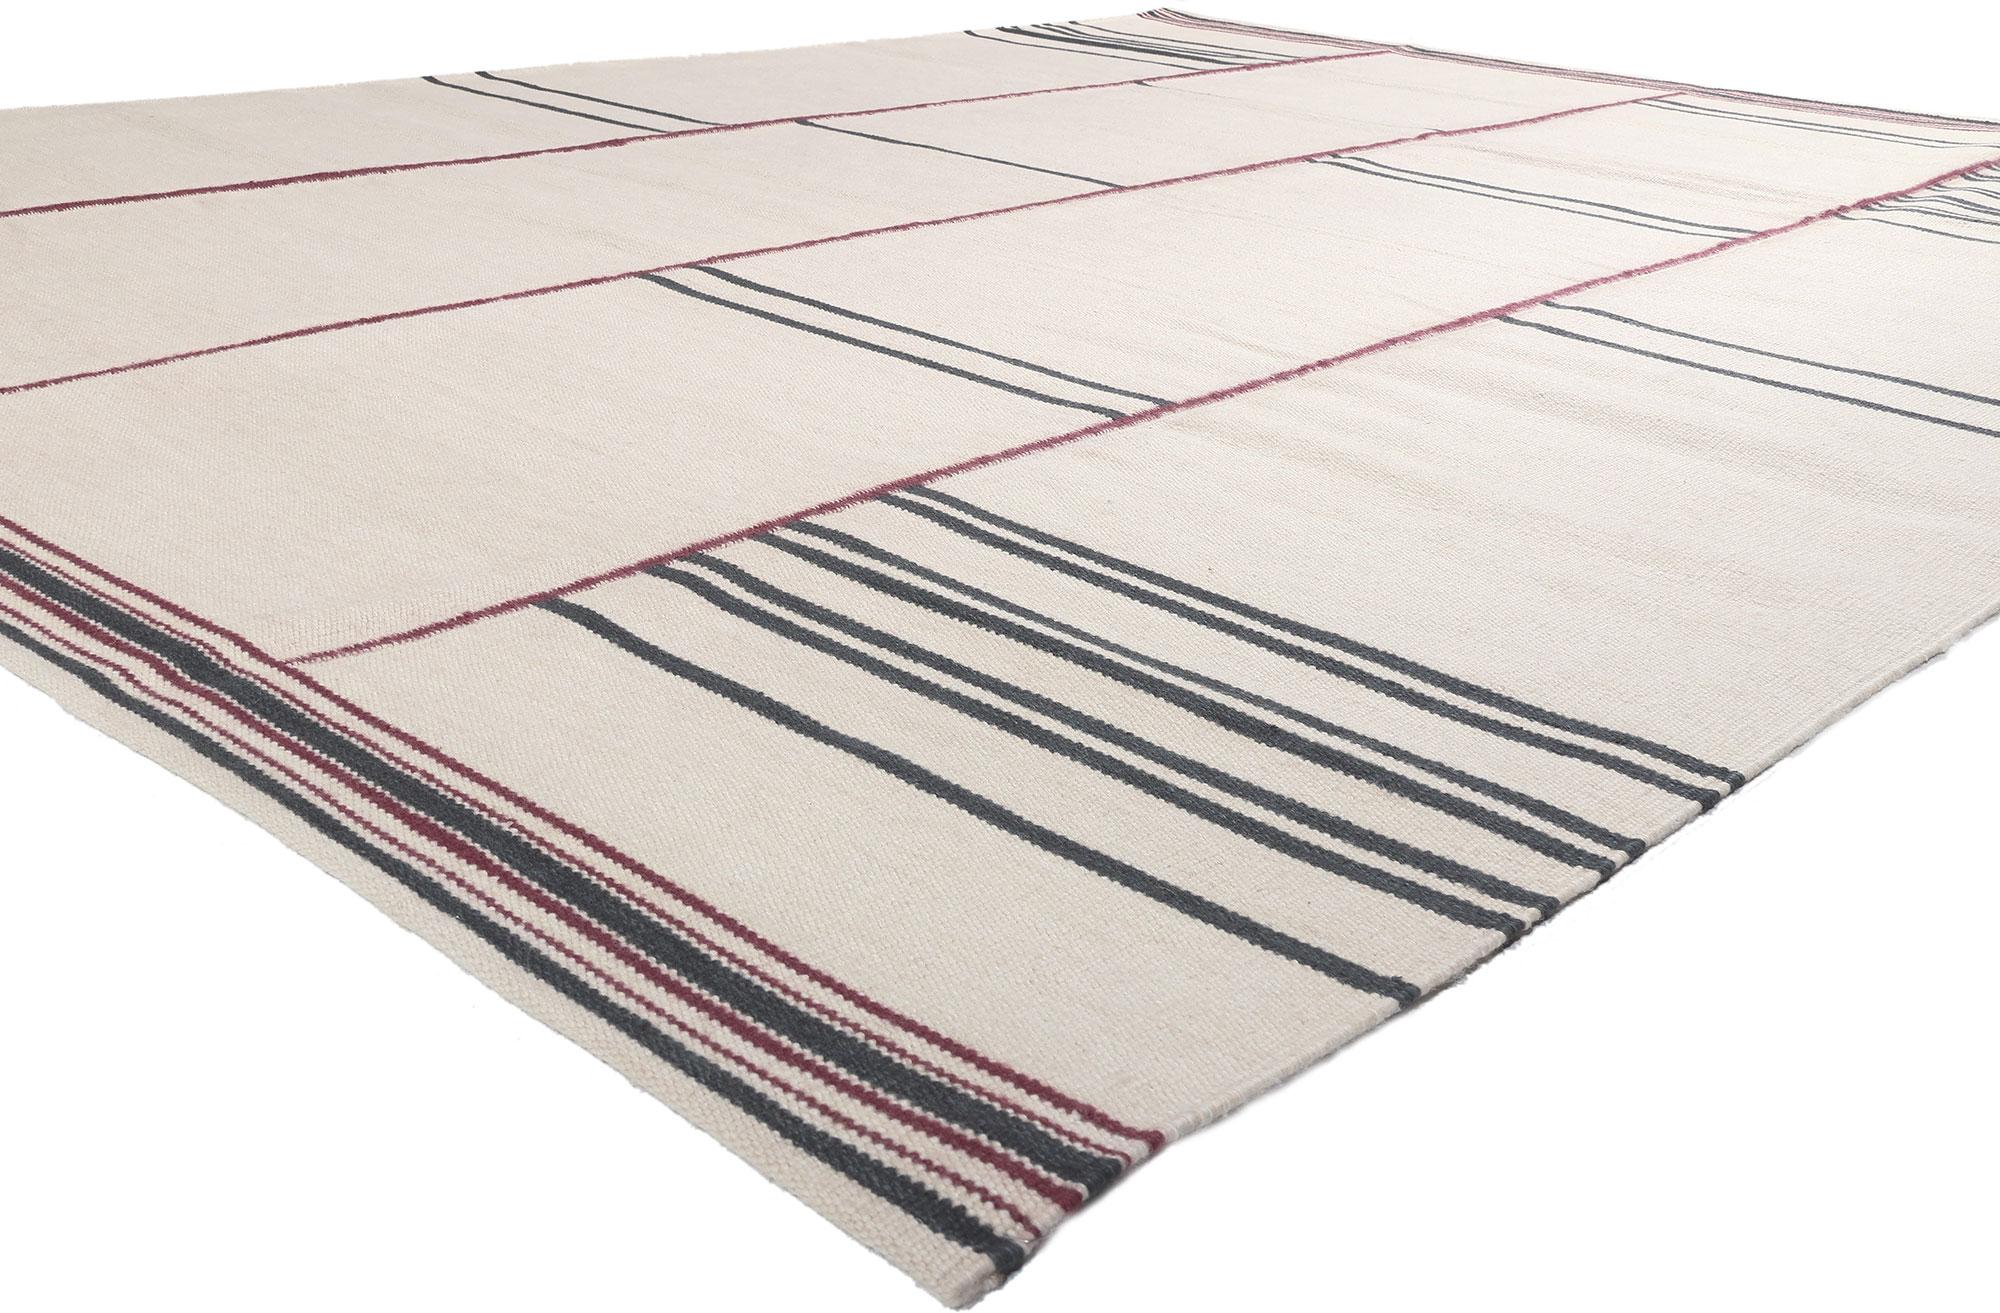 30959 New Swedish Inspired Kilim Rug, 10'00 x 12'11.
Ce tapis Kilim en laine tissée à la main, d'inspiration suédoise, est d'une grande simplicité, avec des détails et des textures incroyables. Il procure une sensation de confort douillet, sans